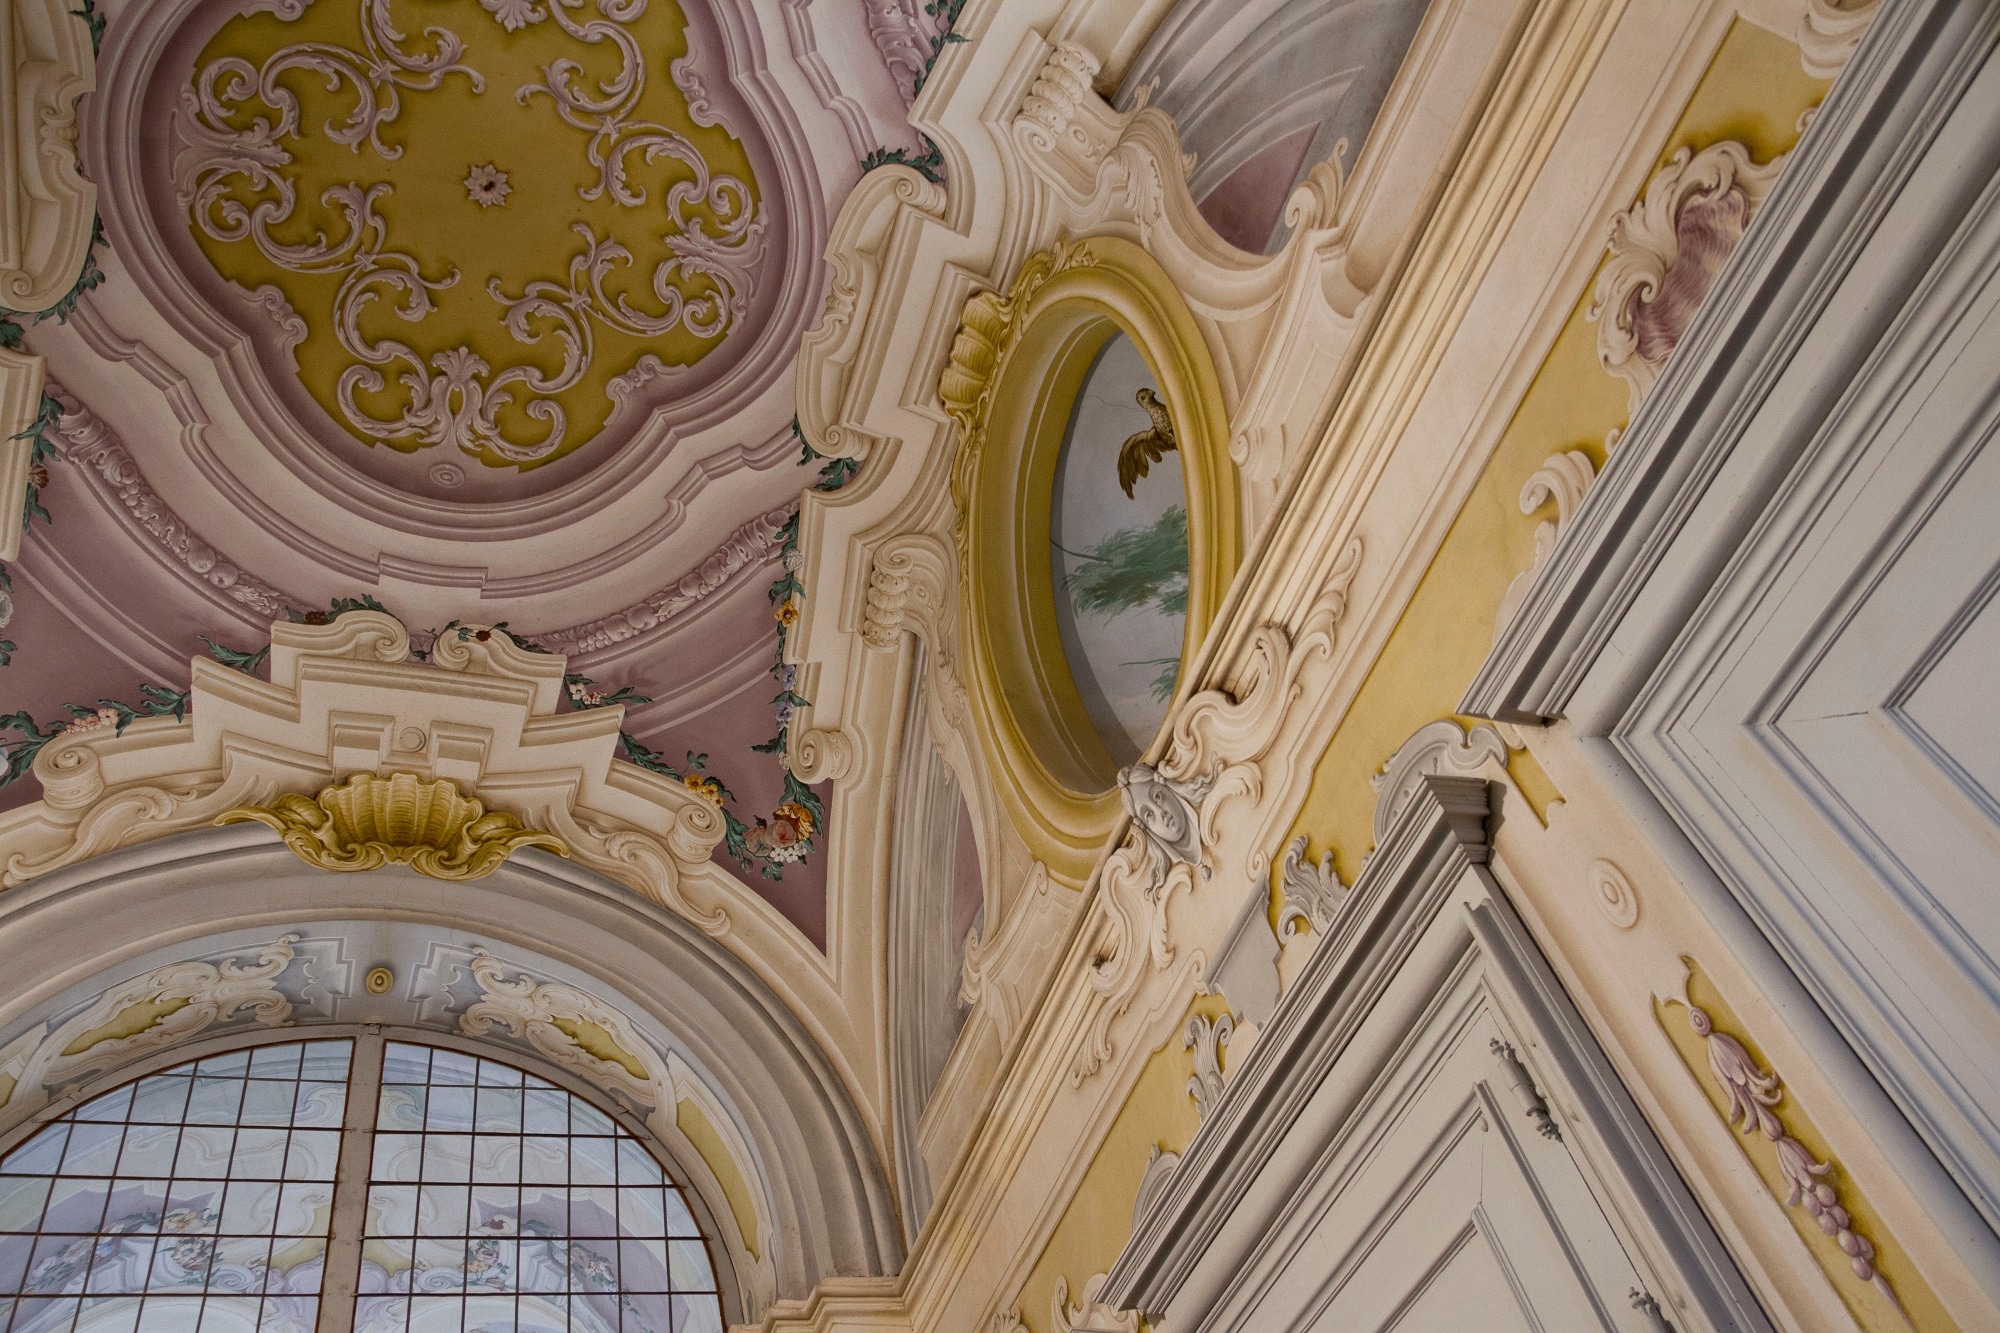 Dipinti trompe-l'oeil su soffitto e pareti del corridoio tra il Salone centrale e l’appartamento della Regina, Palazzina di Caccia Stupinigi, frazione di Nichelino, Torino